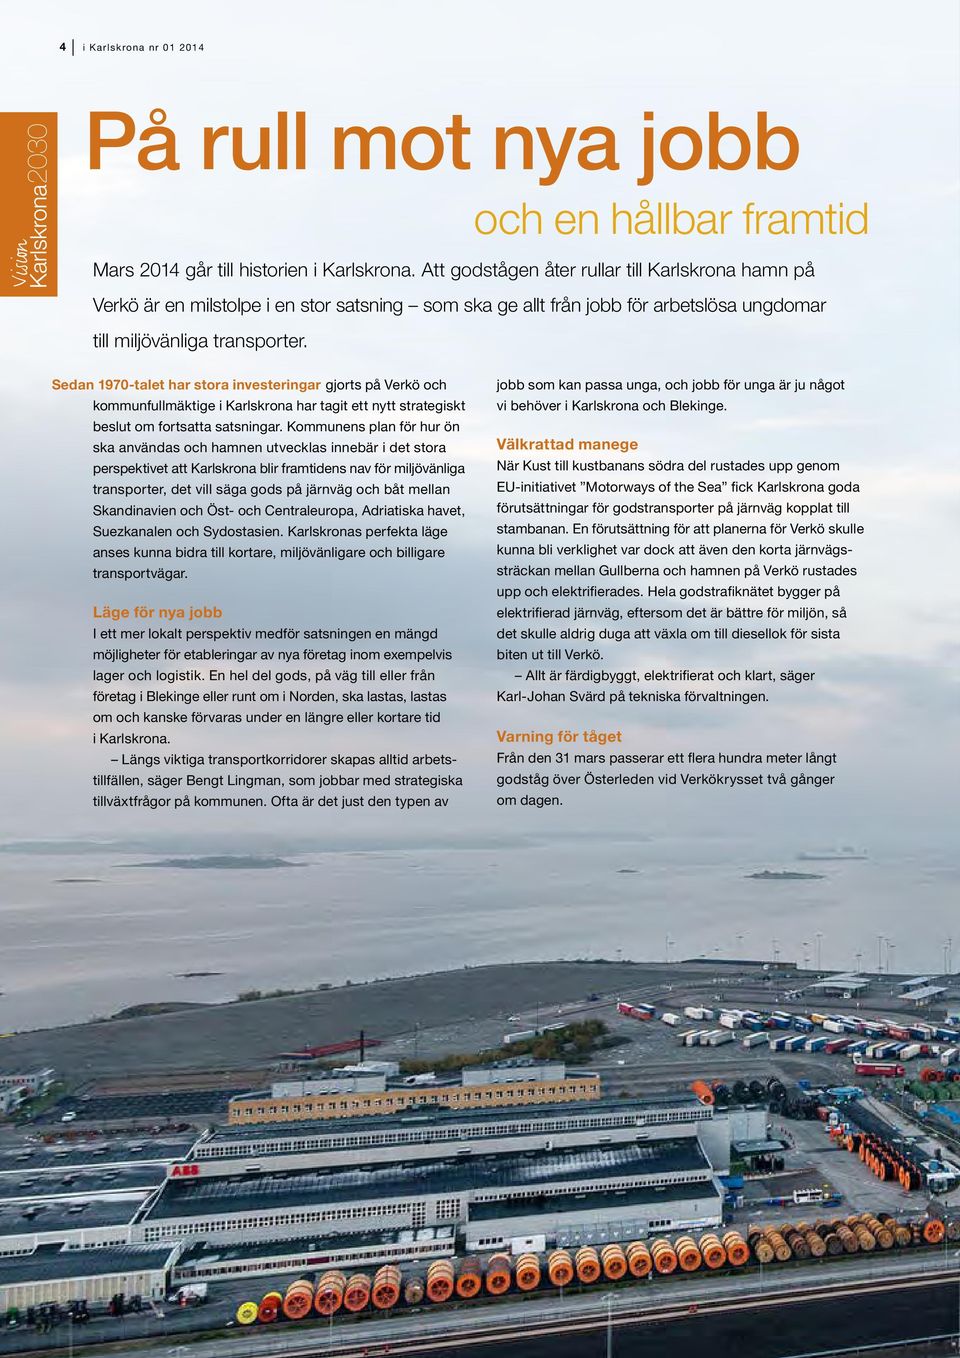 Sedan 1970-talet har stora investeringar gjorts på Verkö och kommunfullmäktige i Karlskrona har tagit ett nytt strategiskt beslut om fortsatta satsningar.